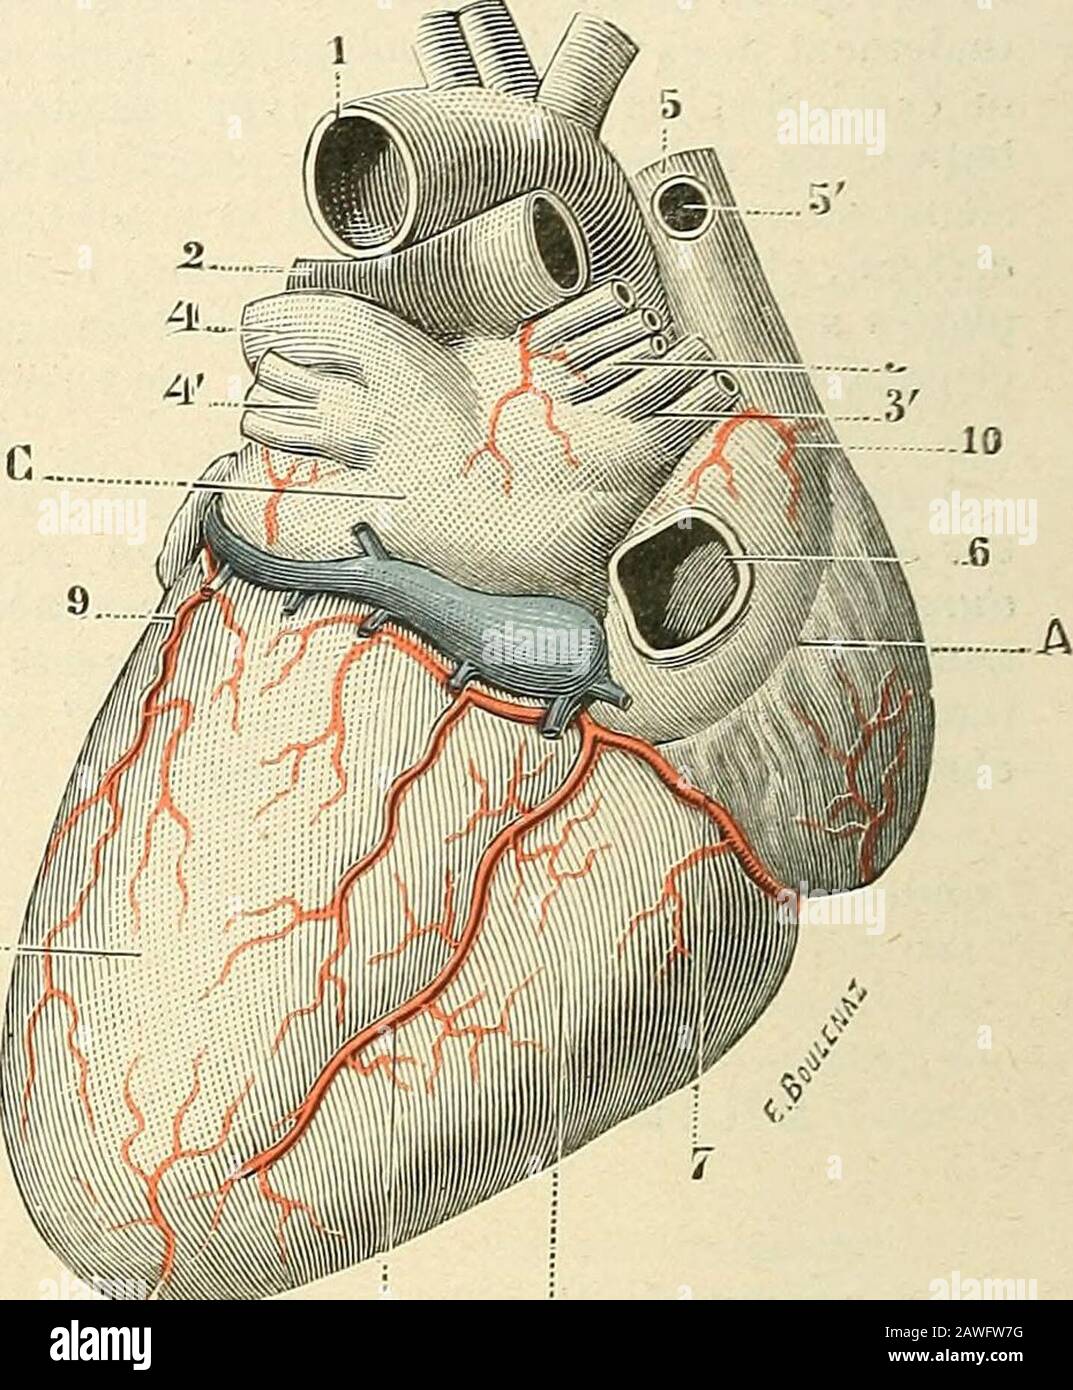 Traité d'anatomie humaine . s Fig. 96.Artèies du cœur, vue antérieure. C Fig. 96 bis.Artères du cœur, vue postérieun A, oreillelto droite. — B, venlricule droit. — C, oreillette gauche. — D, ventricule gauche. — 1, arlcre aorte. —i, artère pulmonaire. — 3, veines pulmonaires droites. — 4, veines pulmonaires gauches. — 5, veine cave supérieure,avec : o, orifice de la grande azygos. — 6, orifice de la veine cave supérieure. — 7, 7, 7, artère coronaire droite. —S, 8, artère coronaire gauche. — 9, 9, artère auriculo-vcntriculaire gauche et ses branches. — 10, 10, branche anté-rieure et branche pos Stock Photo